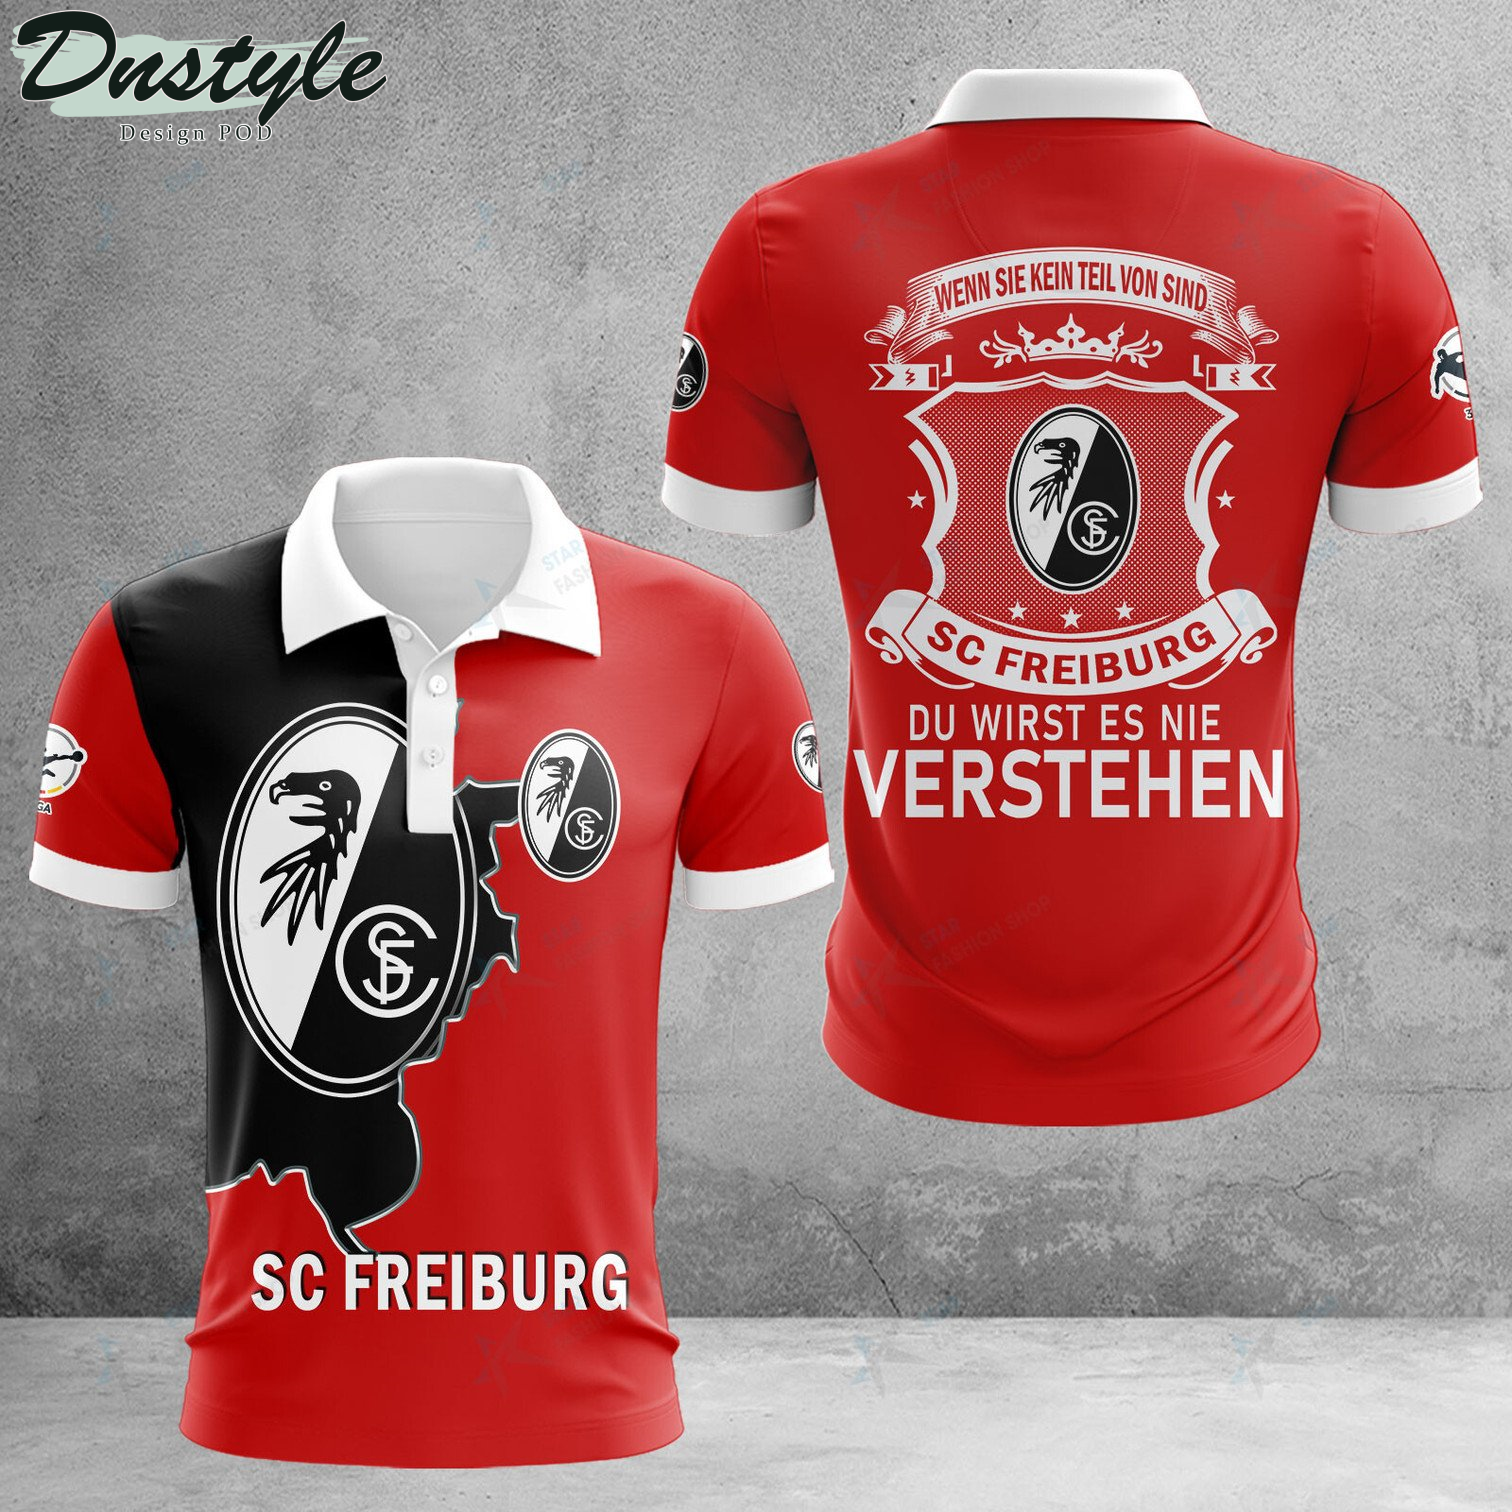 SC Freiburg II wenn sie kein teil von sind du wirst es nie verstehen Polo Hemd